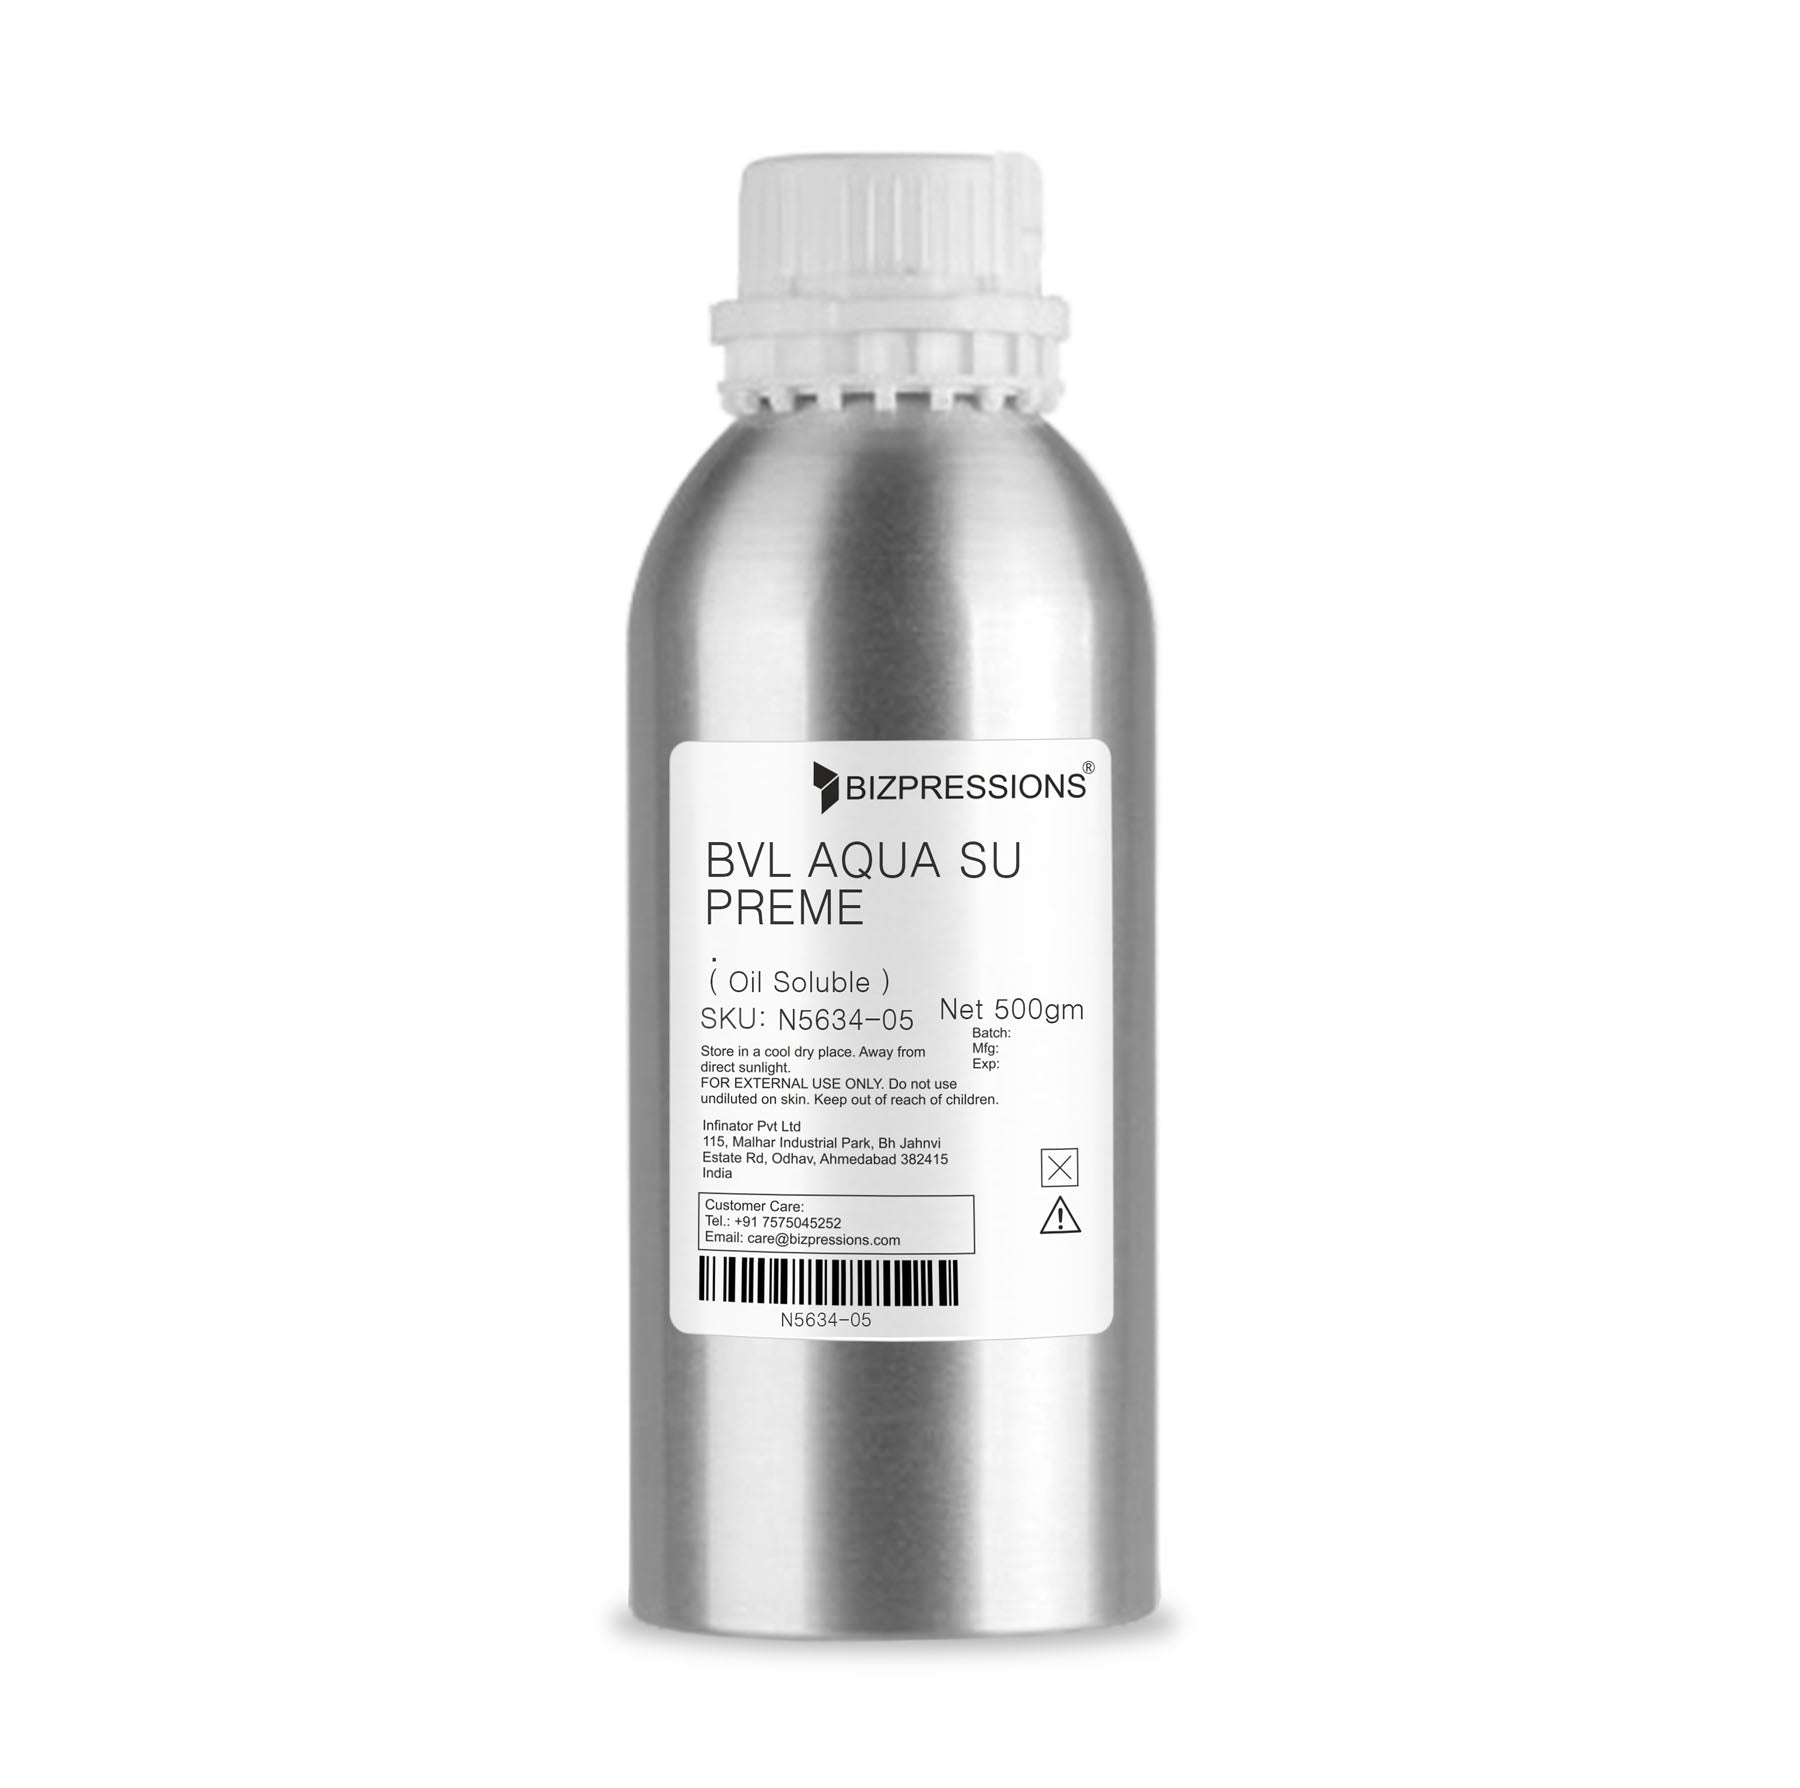 BVL AQUA SUPREME - Fragrance ( Oil Soluble ) - 500 gm